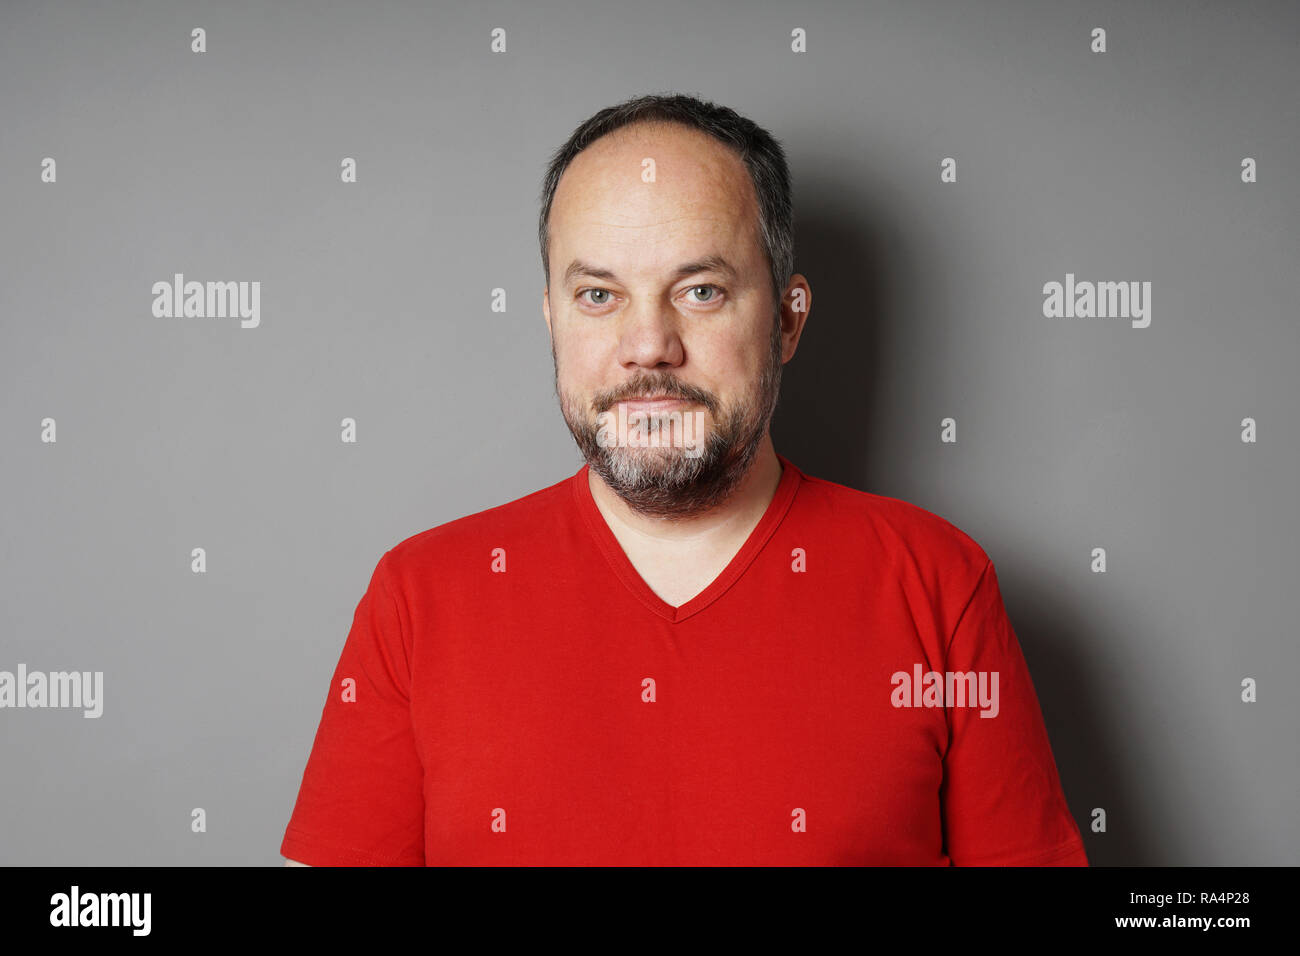 Homme d'âge moyen dans son 40s portant des t-shirt avec des cheveux noirs courts et barbe grisonnante souriant - gray wall background with copy space Banque D'Images